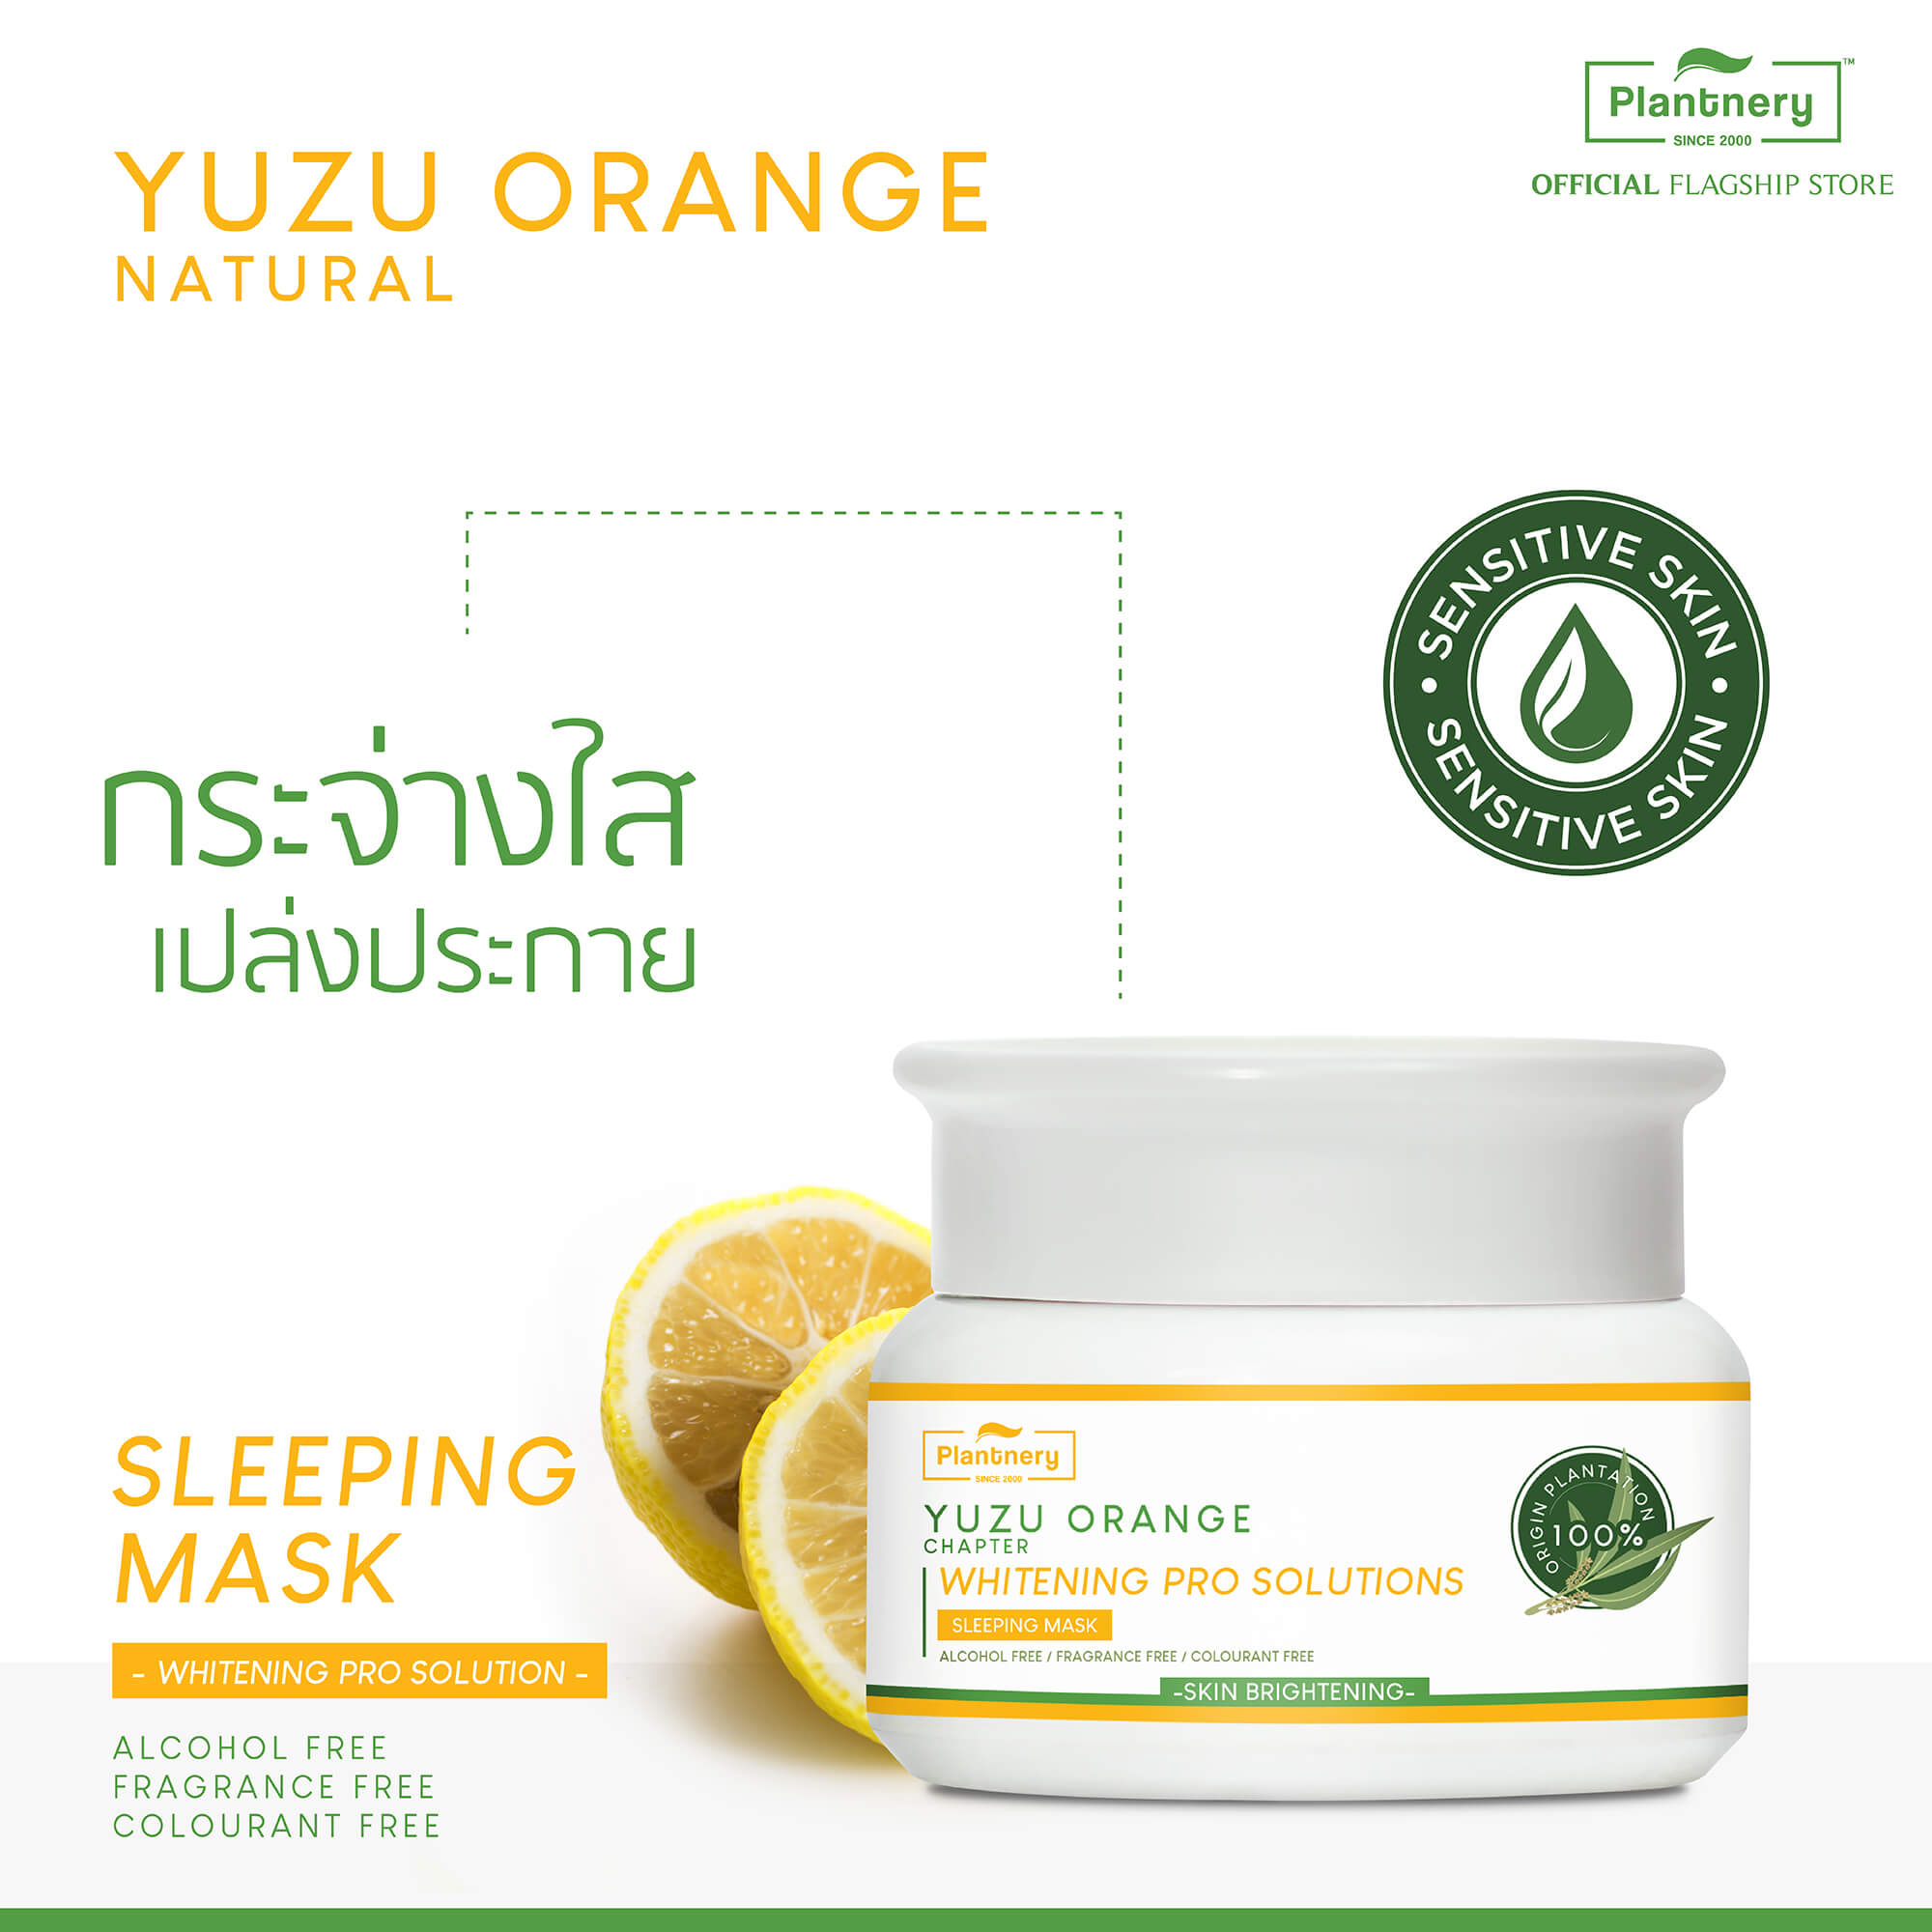 Plantnery Yuzu Orange Sleeping Mask 50 g แพลนท์เนอรี่ ยูซุ ออเร้นจ์ สลีปปิ้ง มาส์ก 50 g "เพื่อผิวสดชื่นเปล่งปลั่ง กระจ่างใส พร้อมรับวันใหม่ยามเช้า" ช่วยเพิ่มประสิทธิภาพในการบำรุงและฟื้นฟูผิวให้ล้ำลึกยาวนาน ตลอด 8 ชั่วโมงของการพักผ่อนยามค่ำคืน เพื่อผิวเปล่งปลั่ง กระจ่างใส ดูเนียนนุ่มอย่างเป็นธรรมชาติยามตื่นนอน 